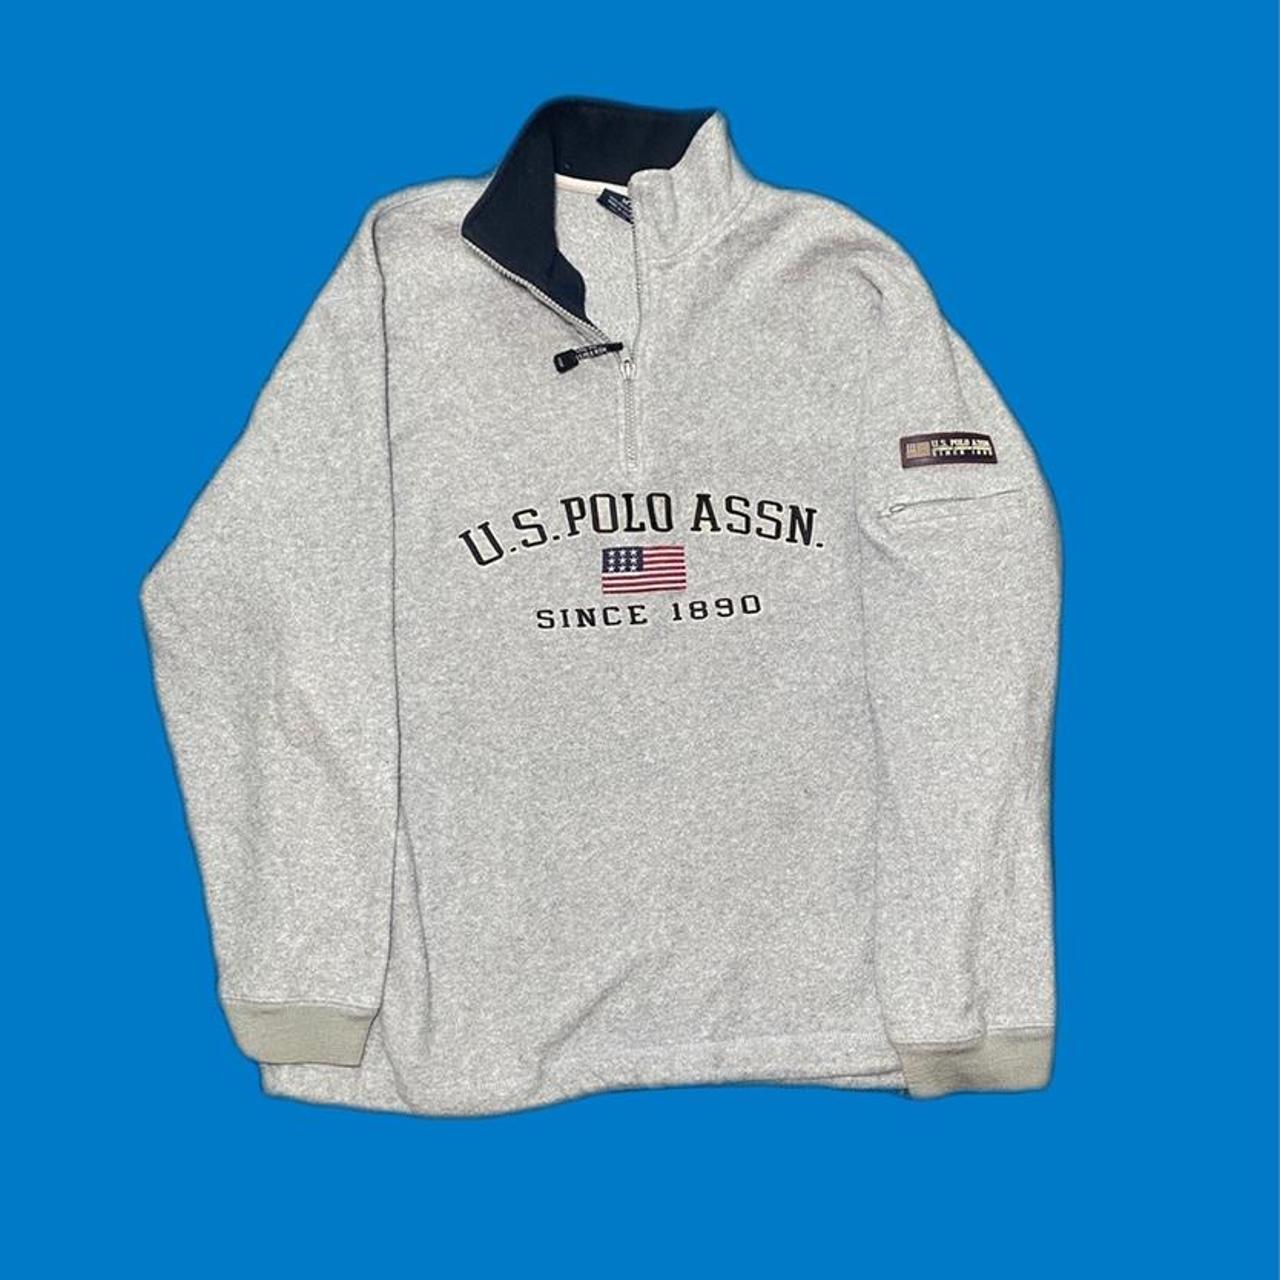 U.S. Polo Assn. Men's Grey Sweatshirt